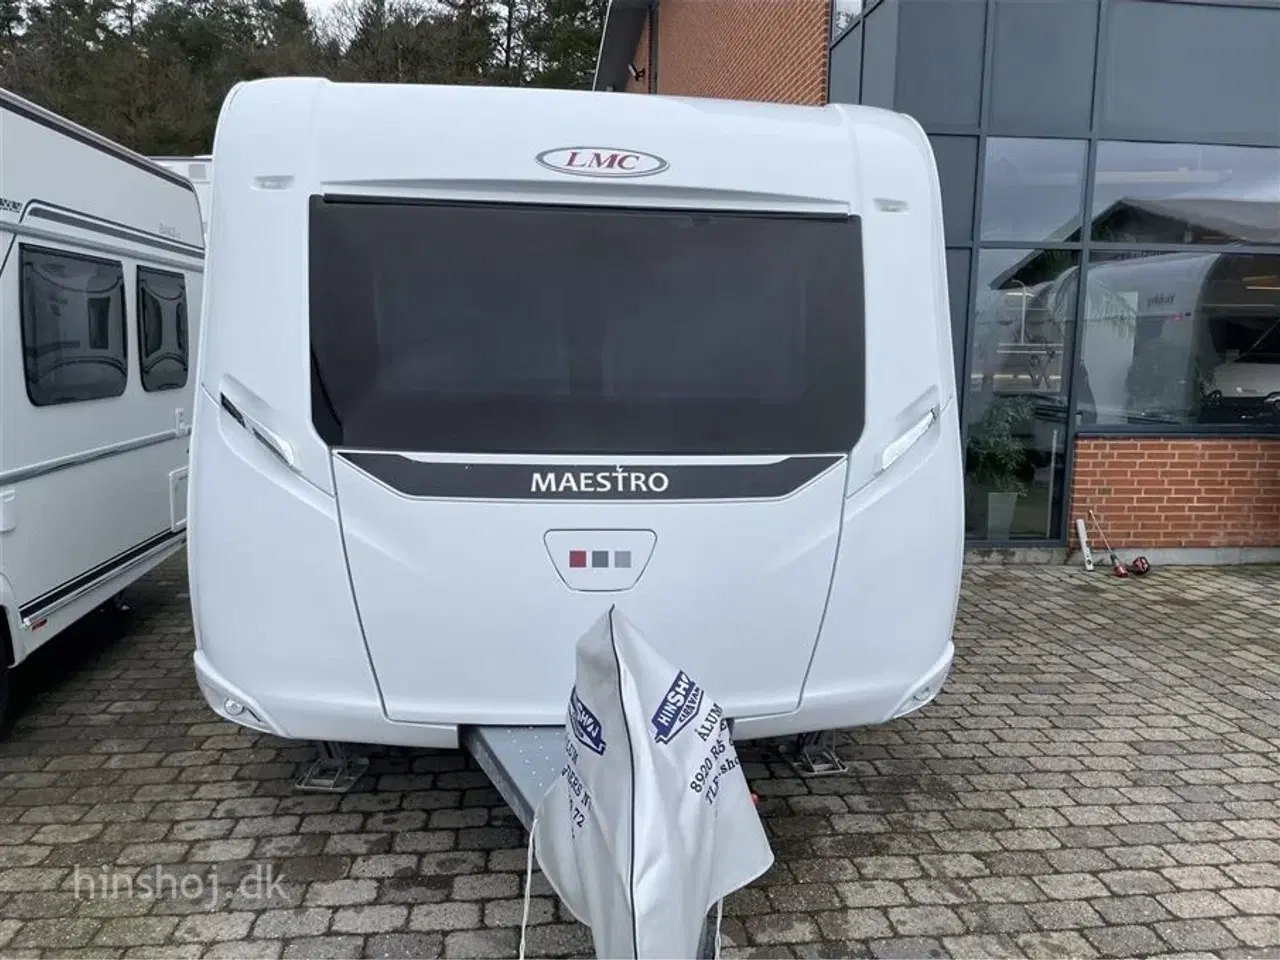 Billede 21 - 2018 - LMC Maestro 735 K Alde   Lækker Familie vogn med Alde centralvarme fra LMC fra Hinshøj Caravan A/S